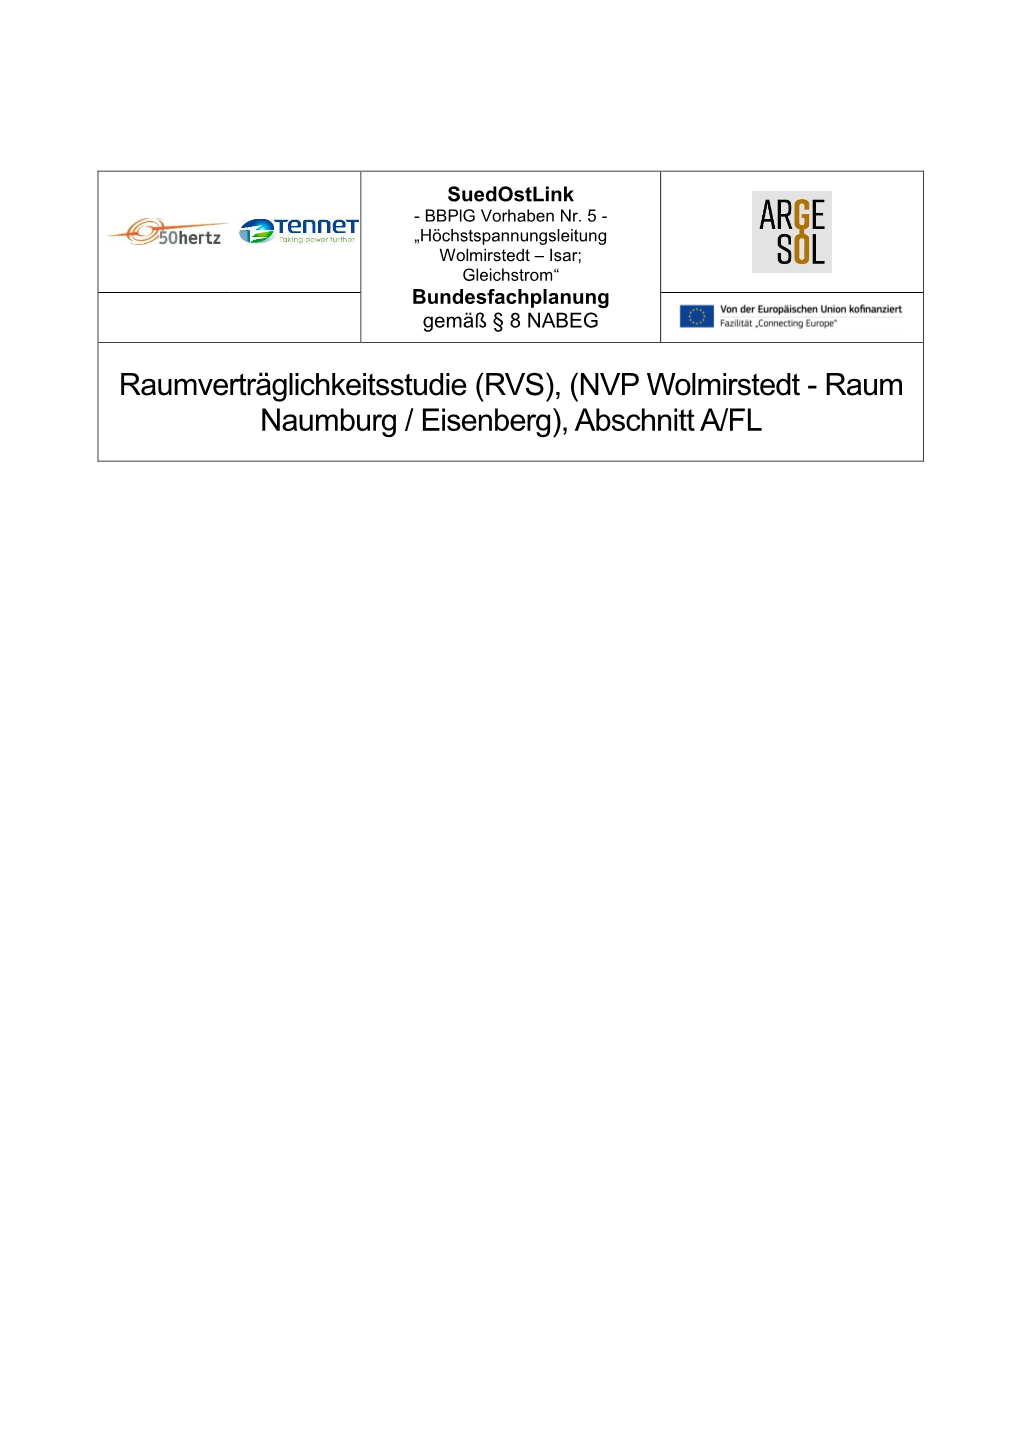 Raumverträglichkeitsstudie (RVS), (NVP Wolmirstedt - Raum Naumburg / Eisenberg), Abschnitt A/FL